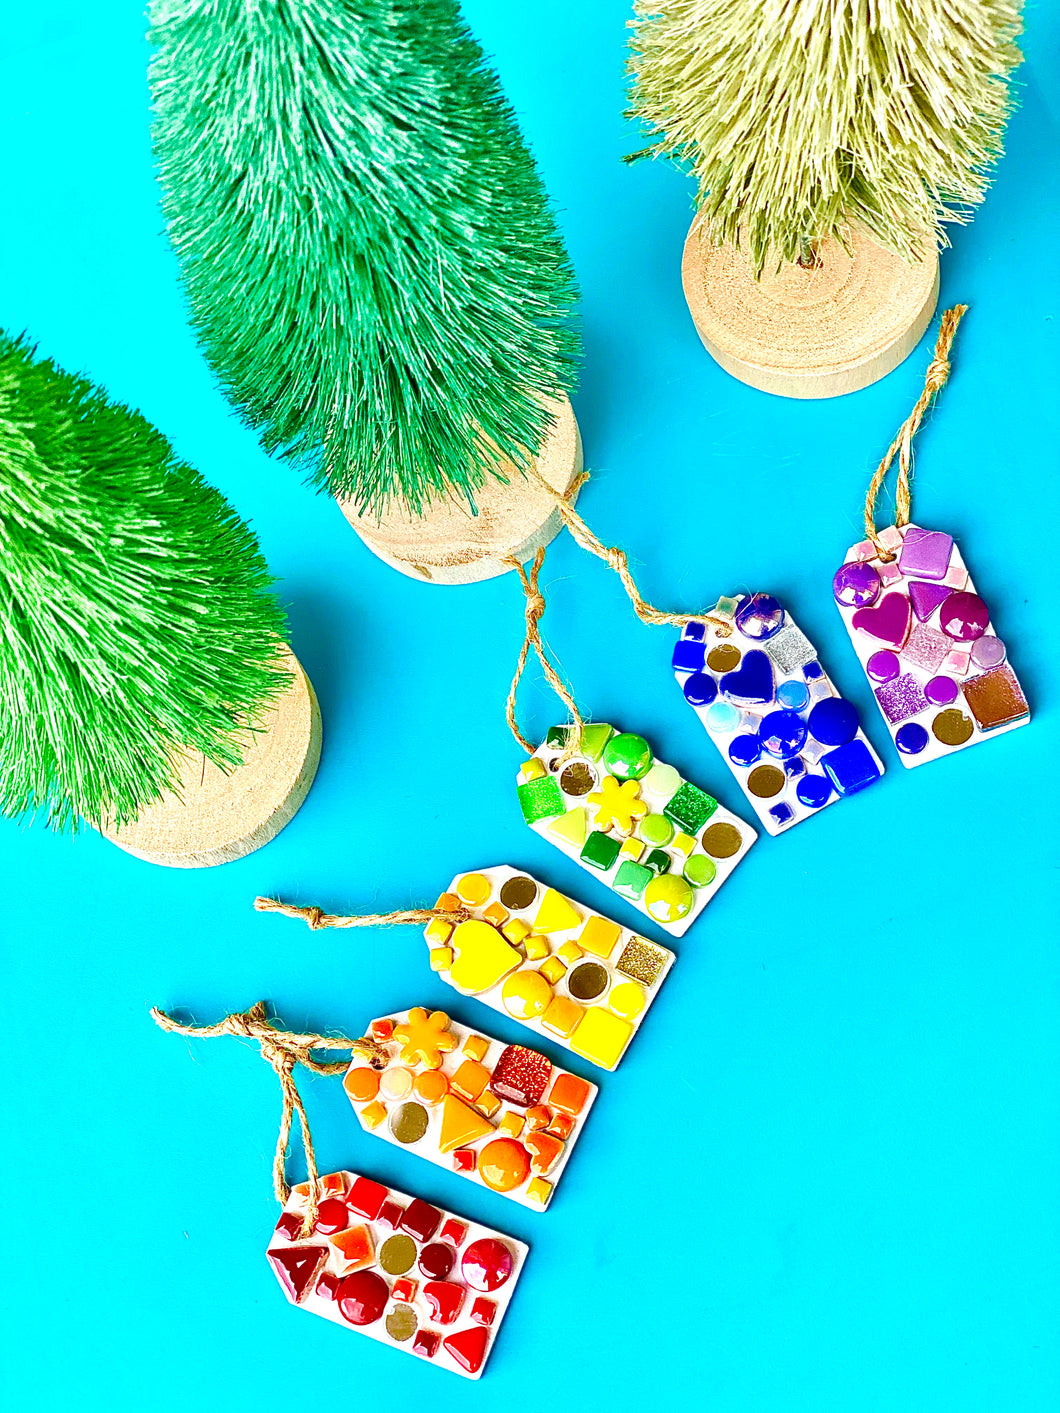 DIY Colorful Mosaic Gift Tags Kit